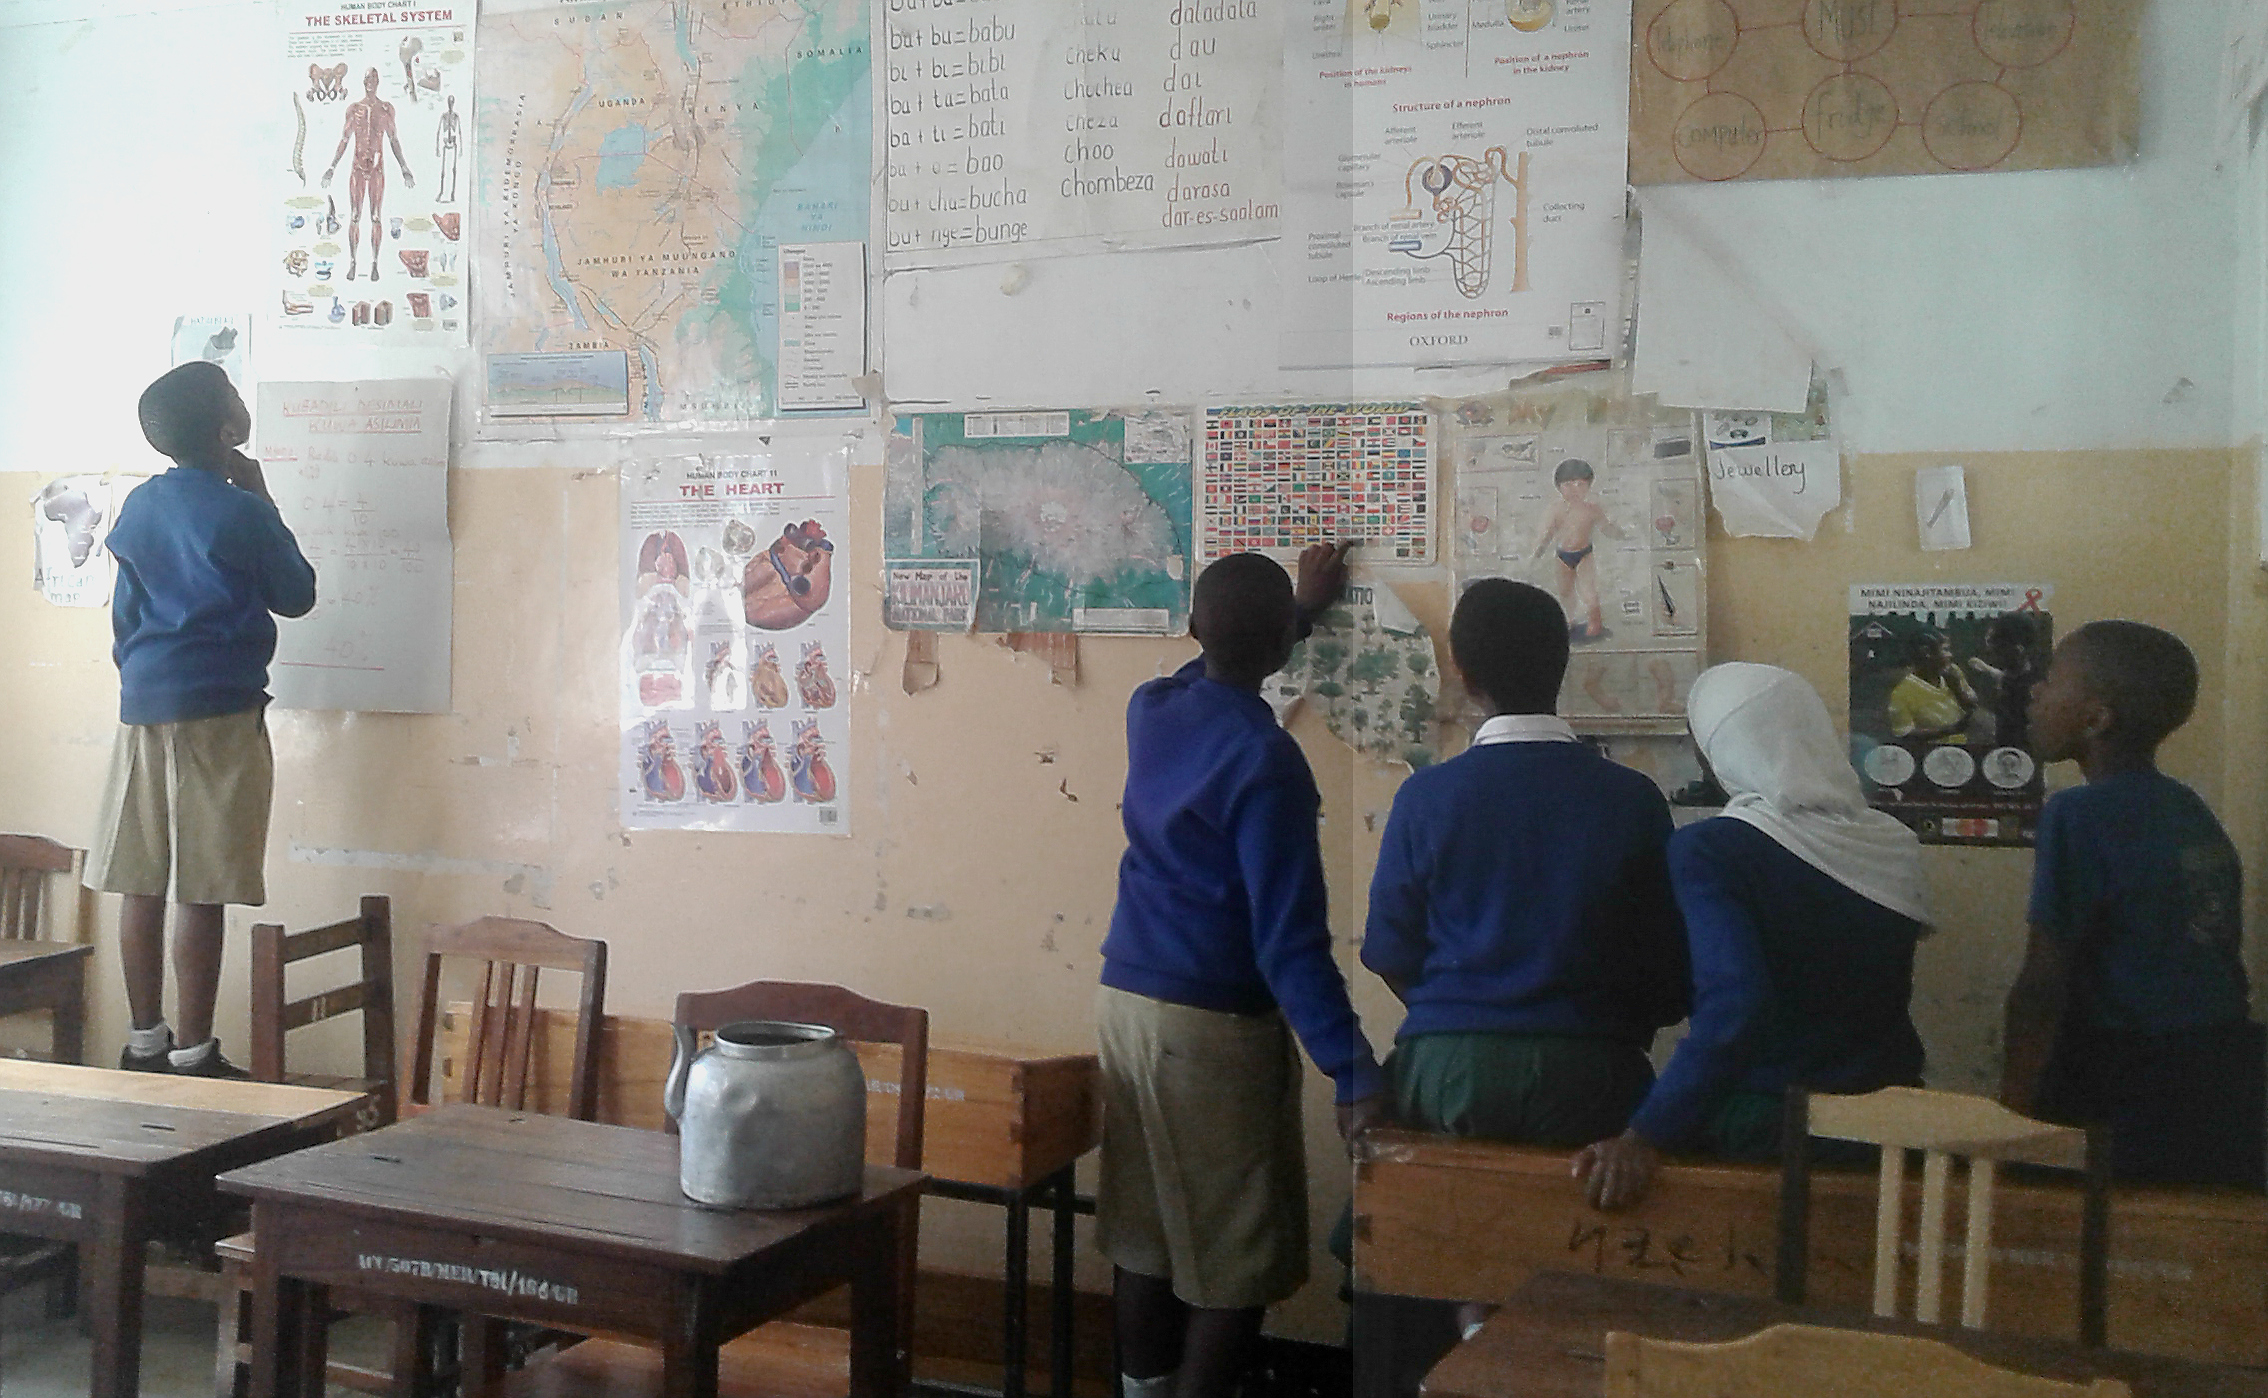 Kuurojen lasten luokka Arushassa